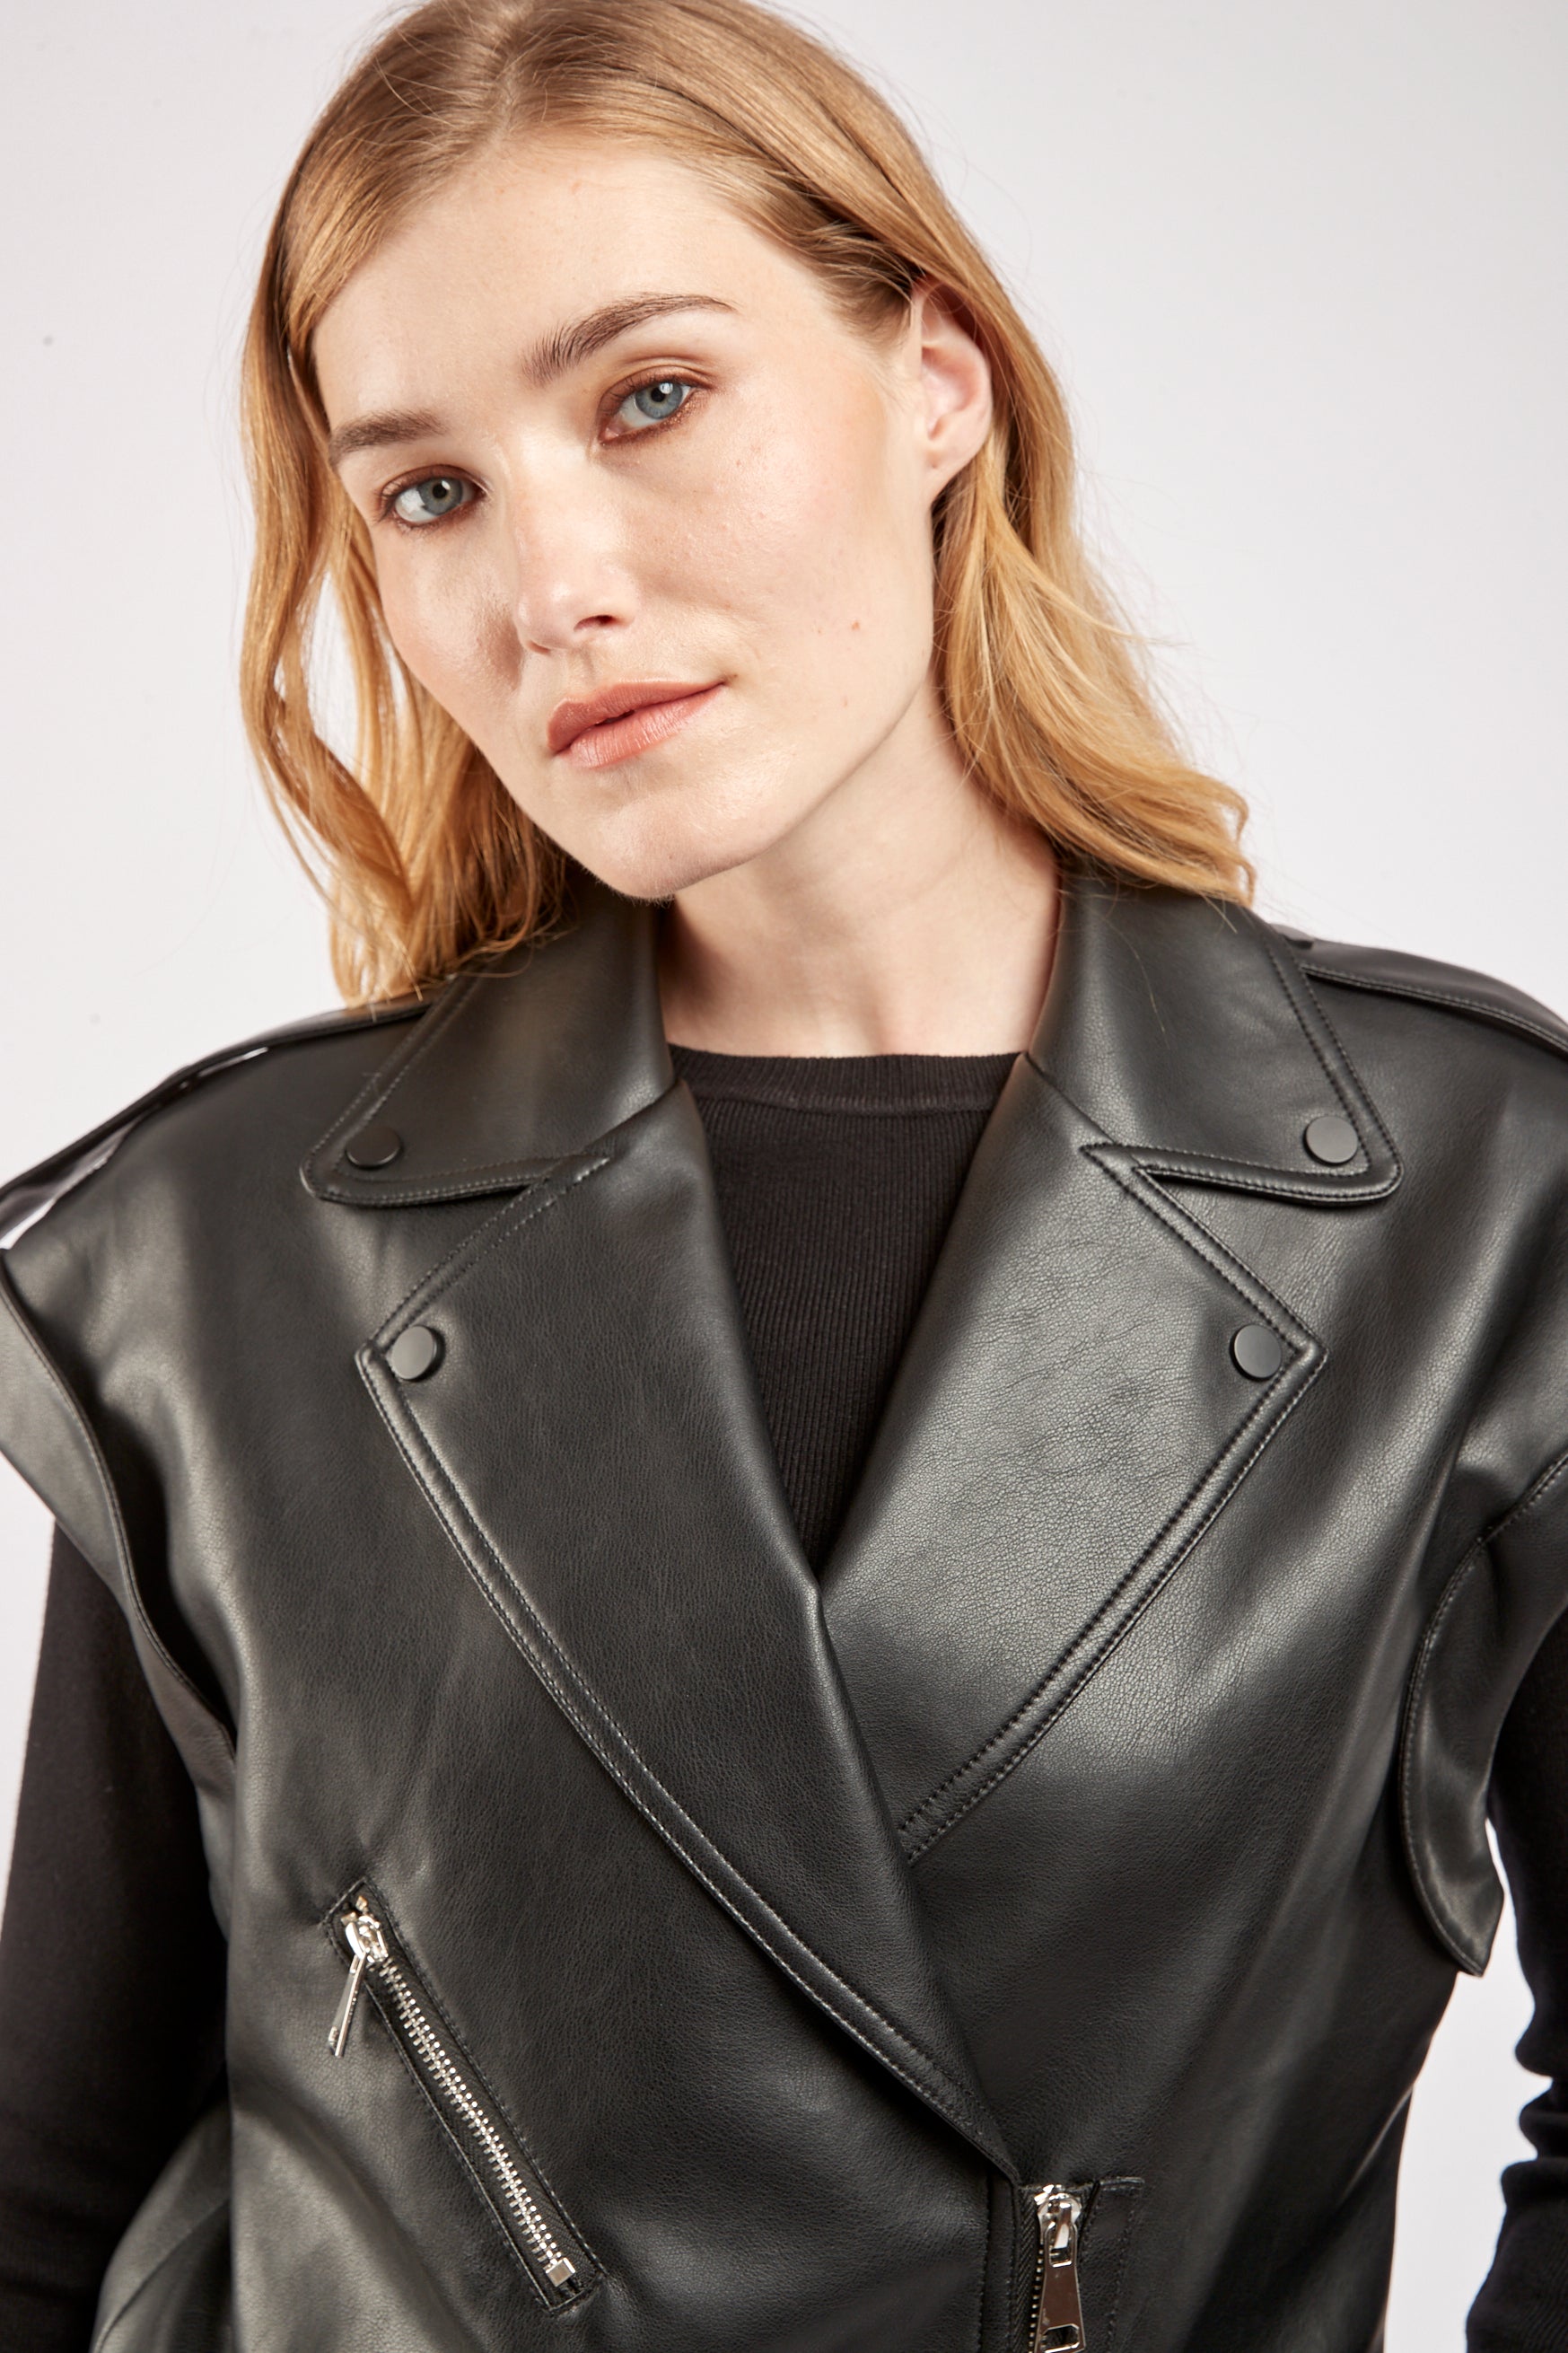 Leather imitation leather - goal biket jacket